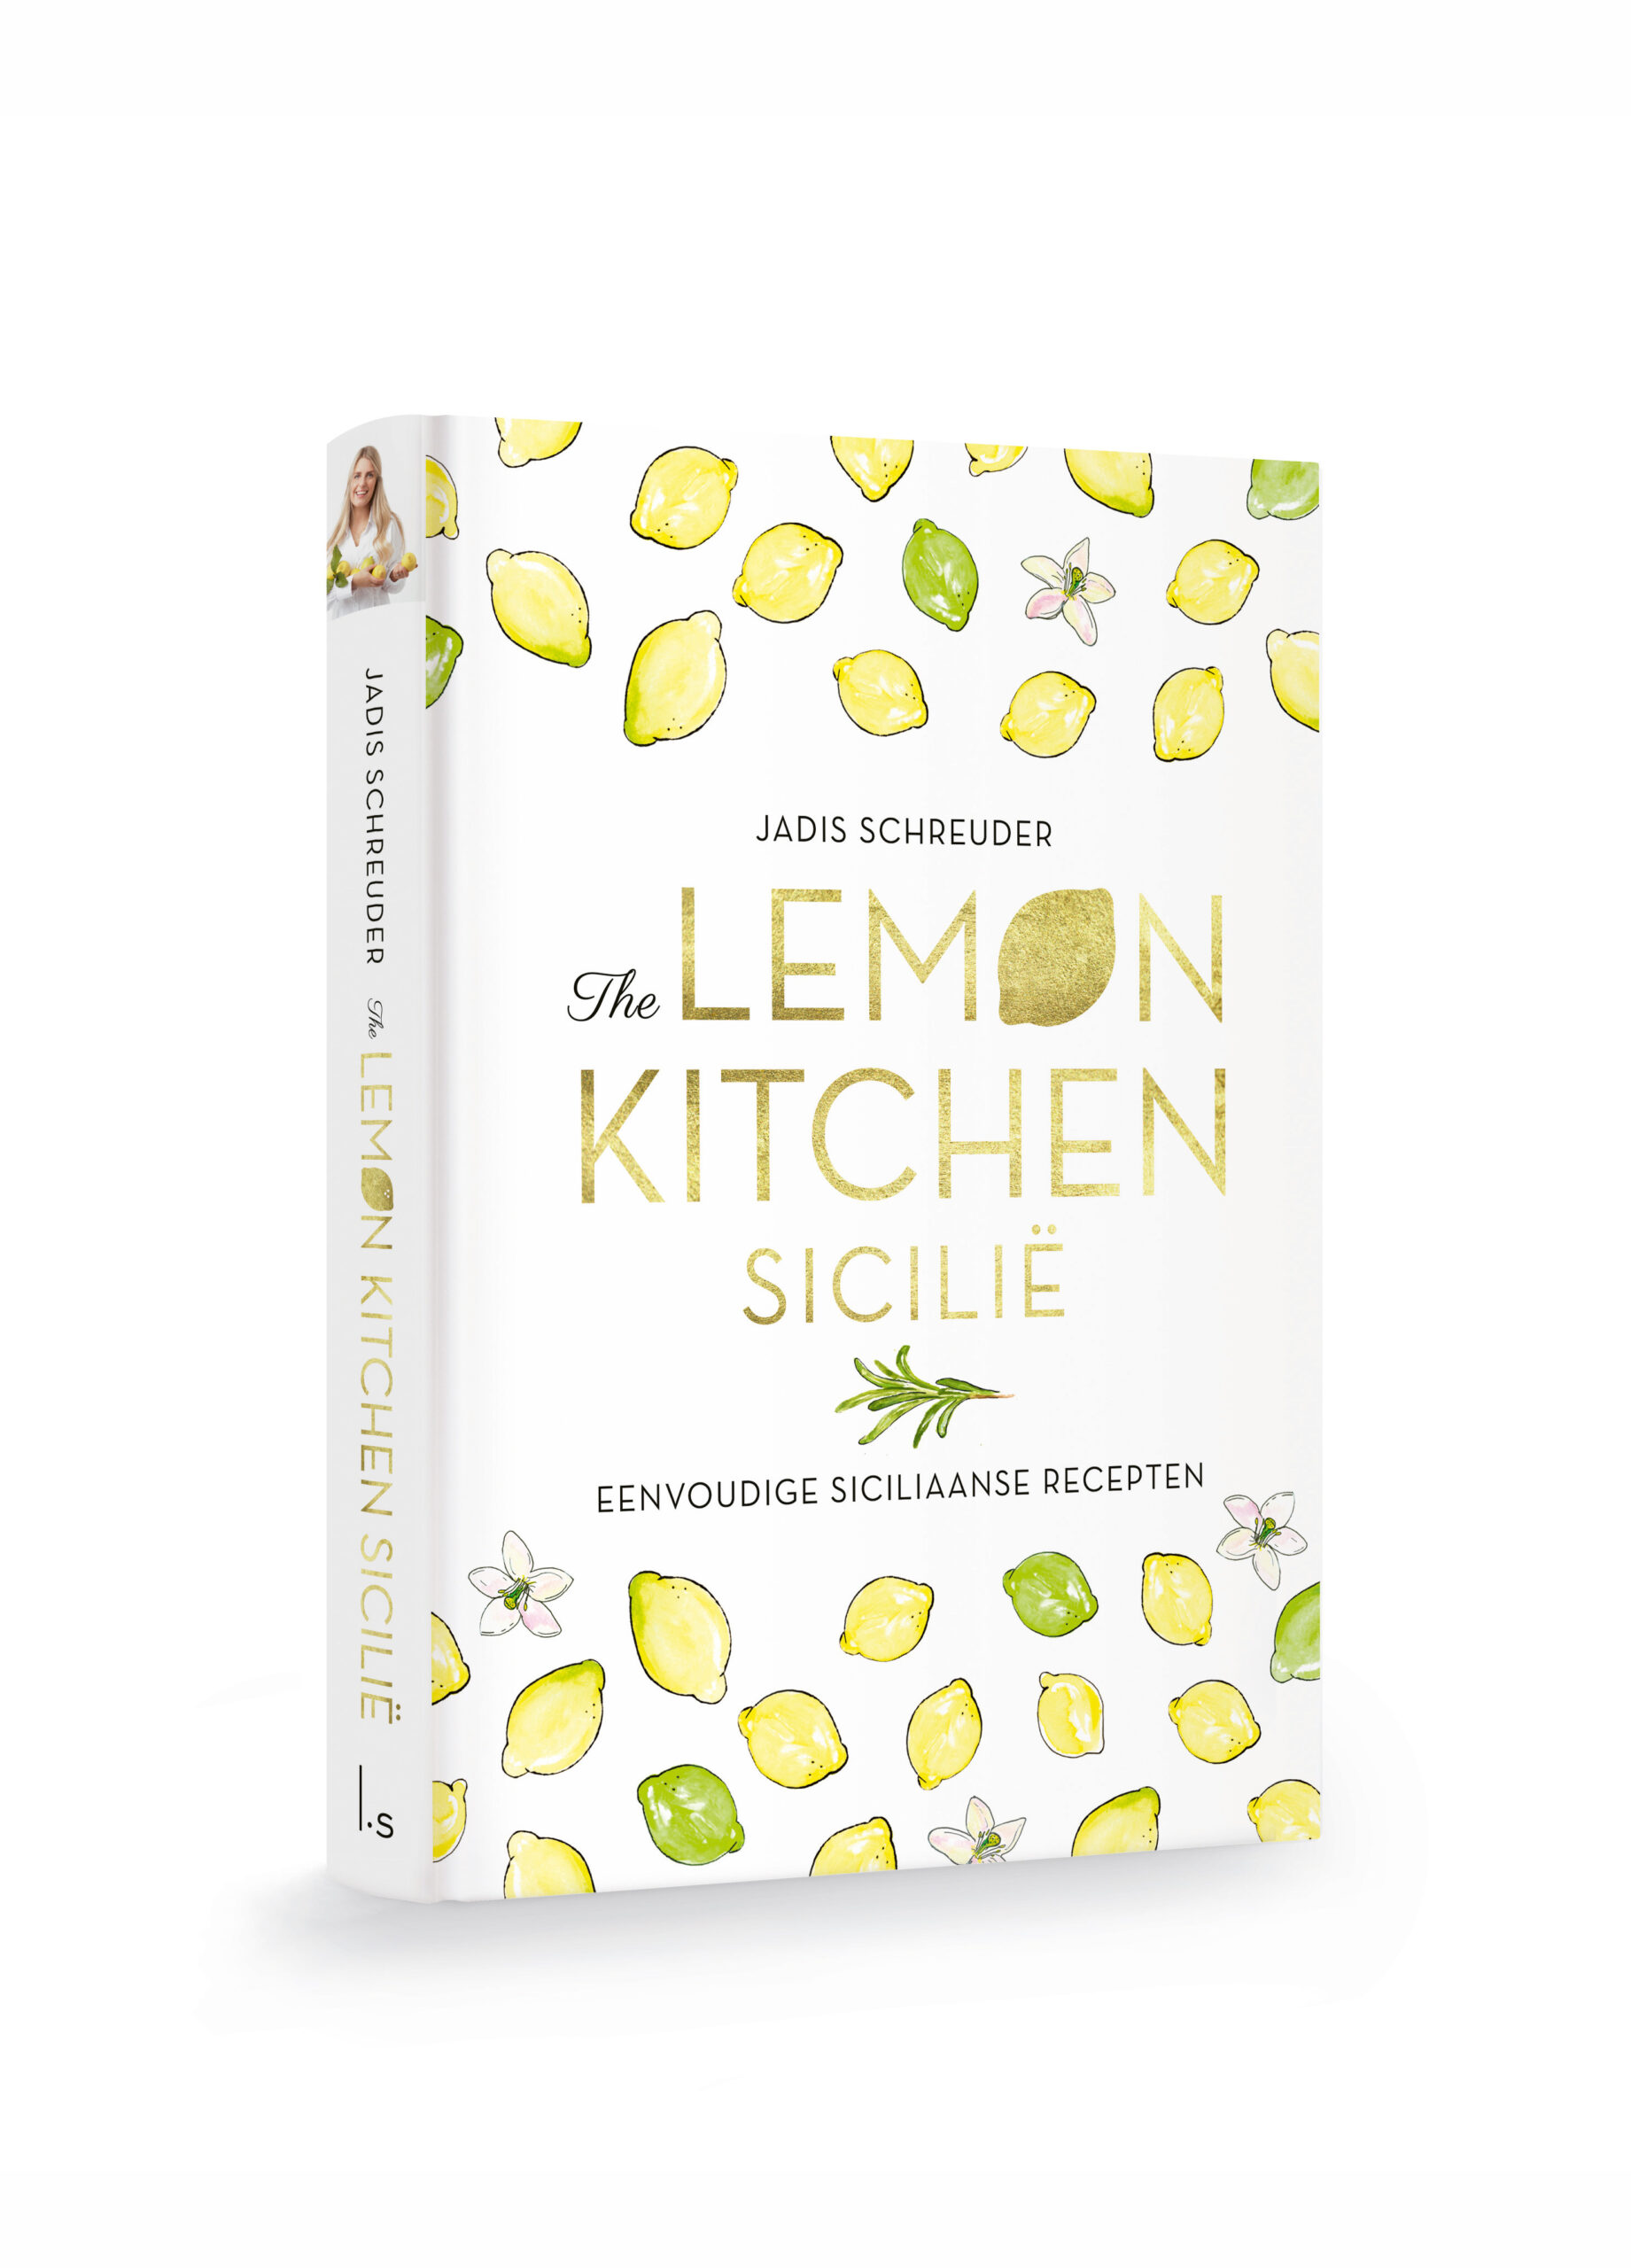 The Lemon Kitchen Sicilië kookboek met gehaakte boekenlegger (gesigneerd)